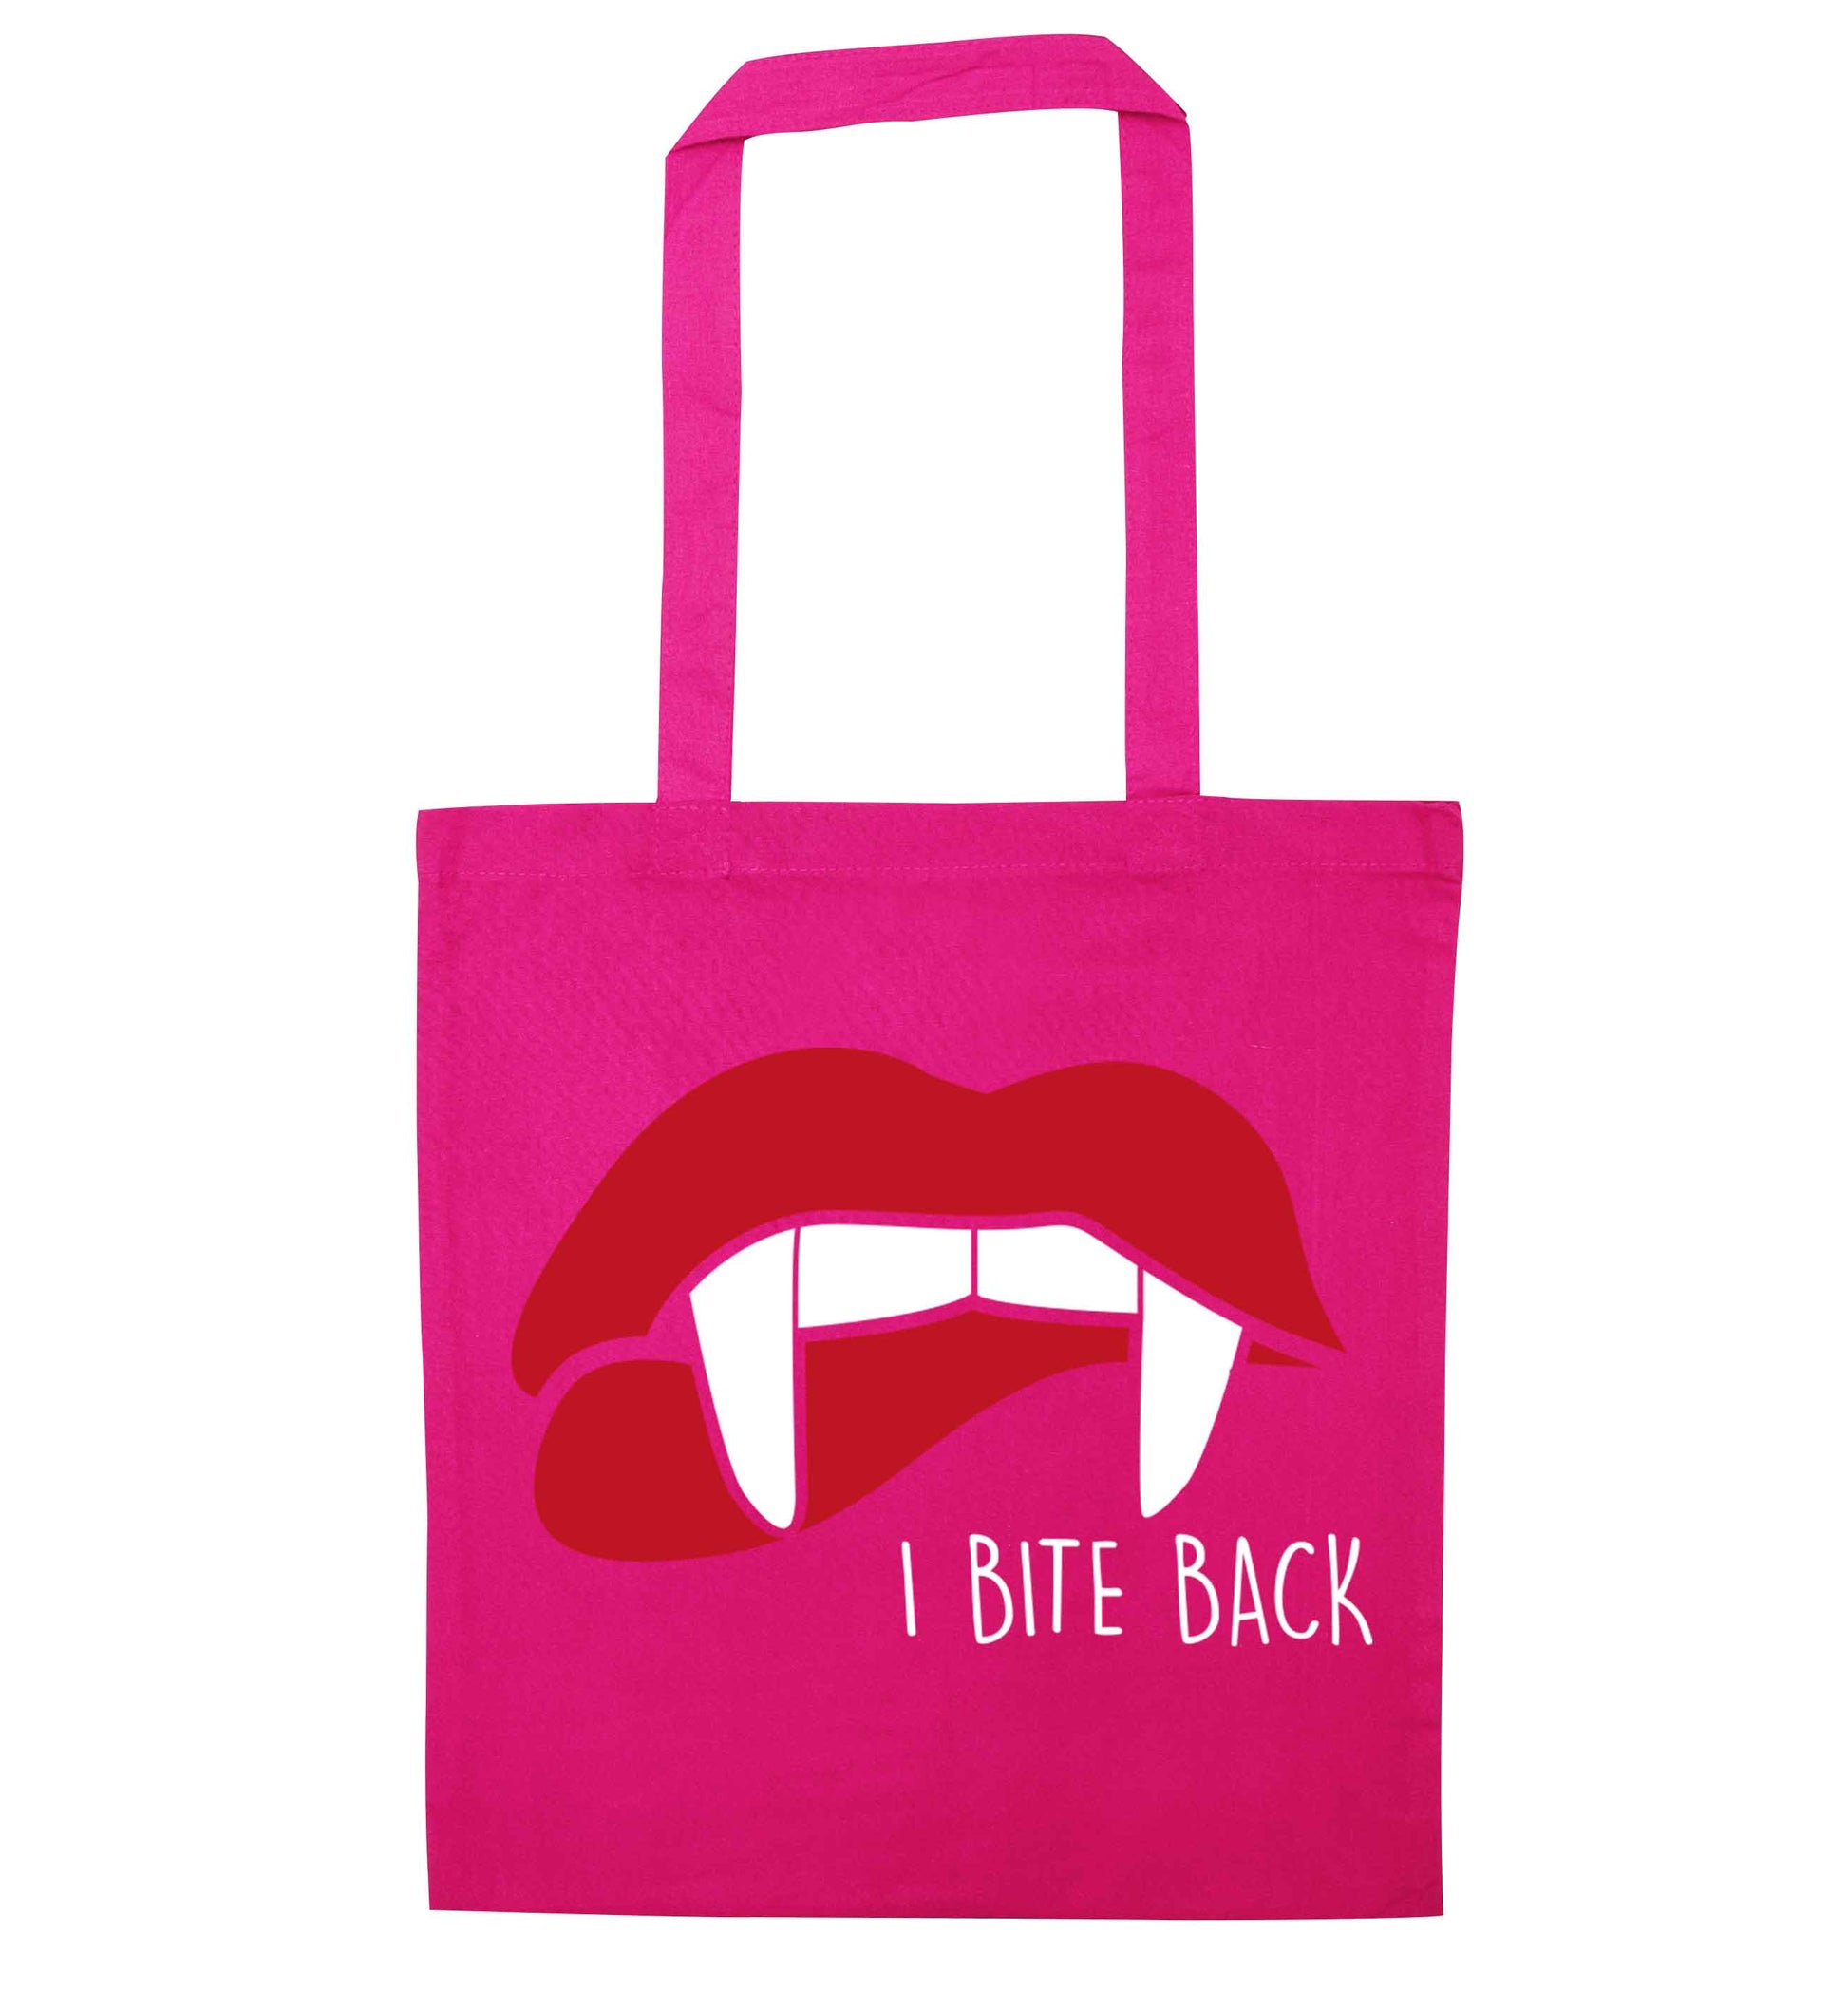 I bite back pink tote bag